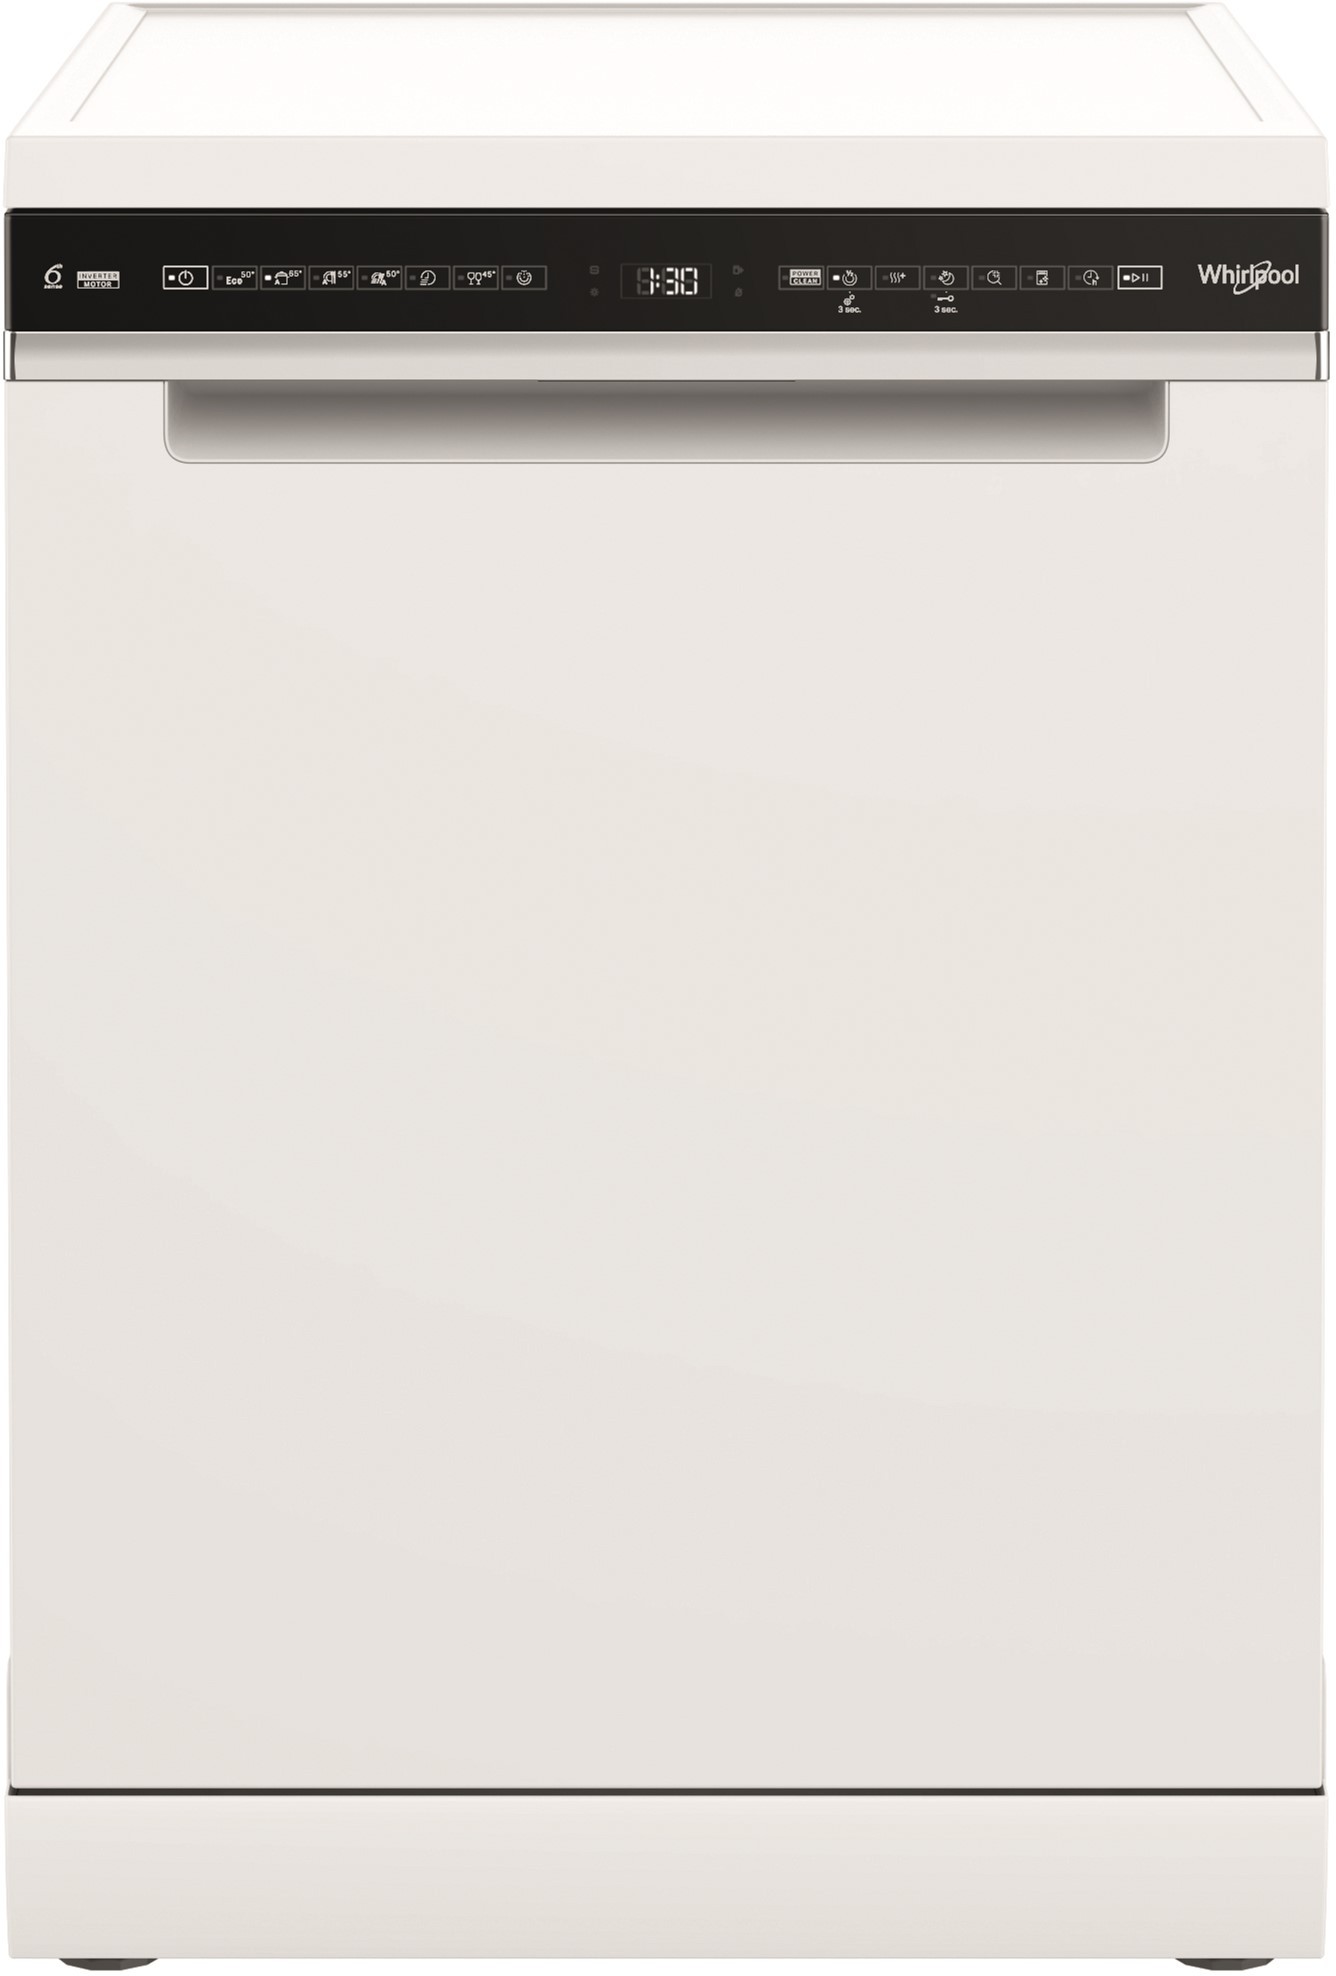 Посудомоечная машина Whirlpool W7F HS31 в интернет-магазине, главное фото